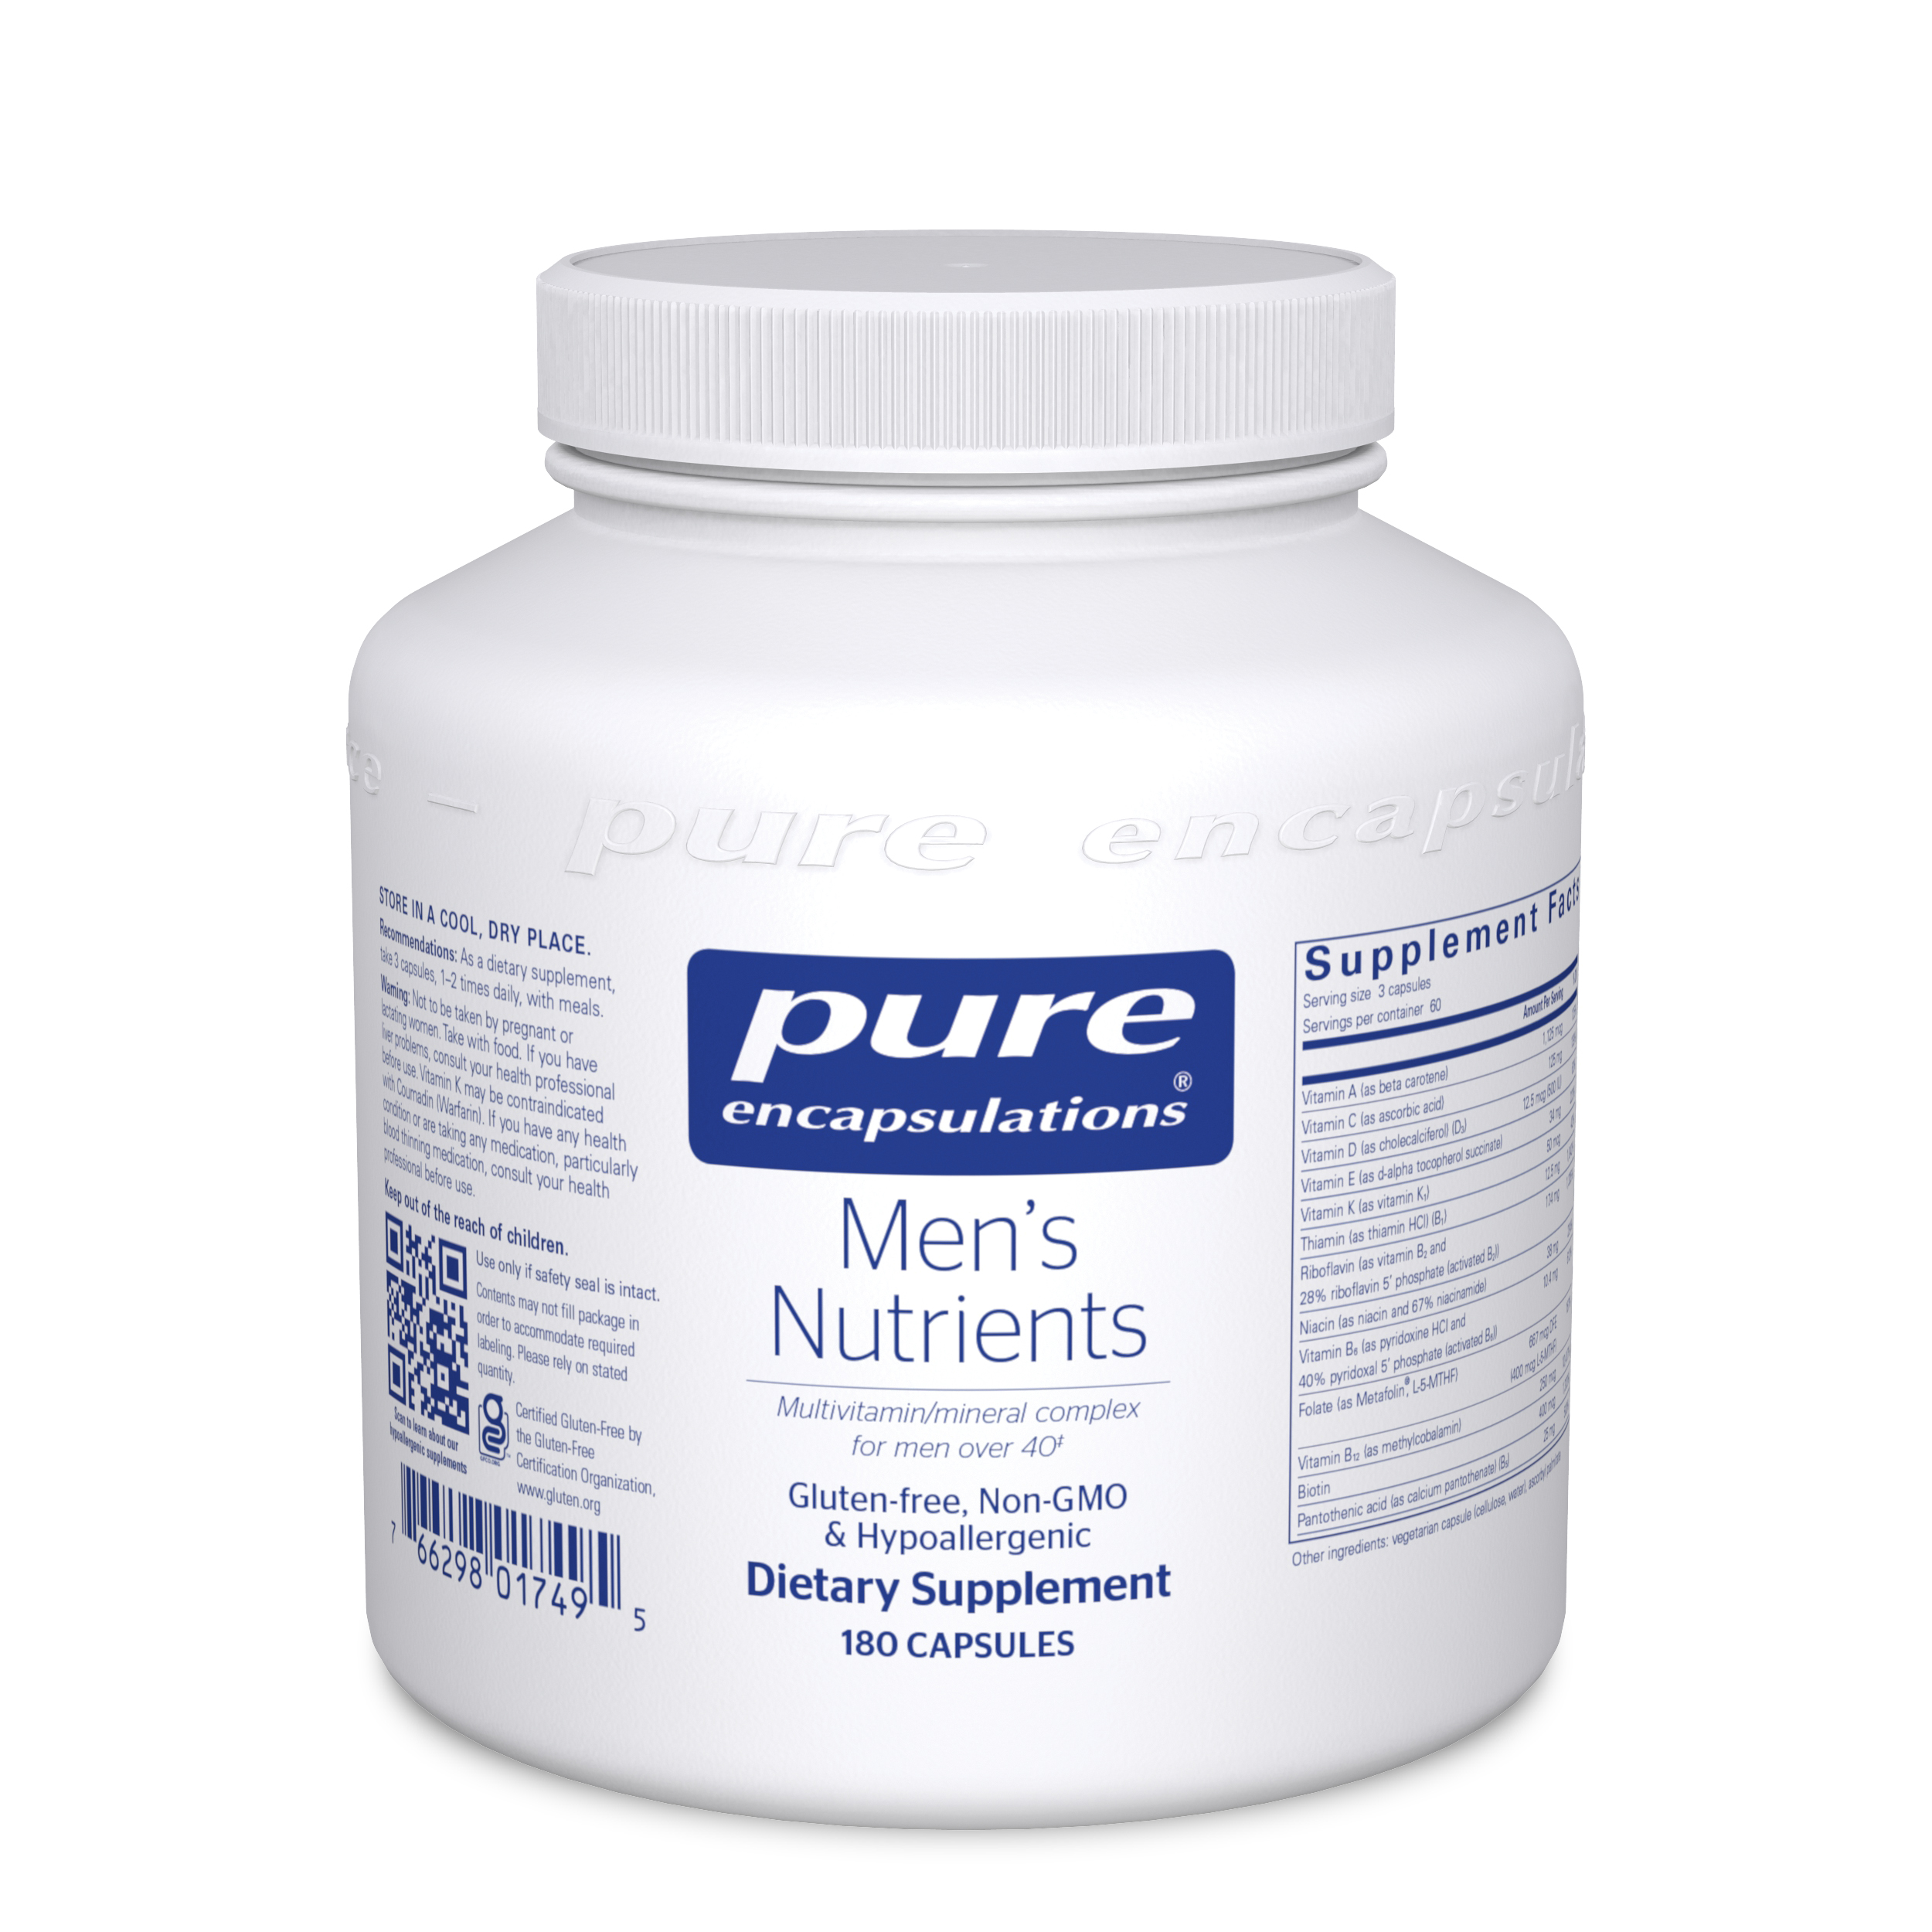 Men's Nutrients Bottle, 180 Capsules